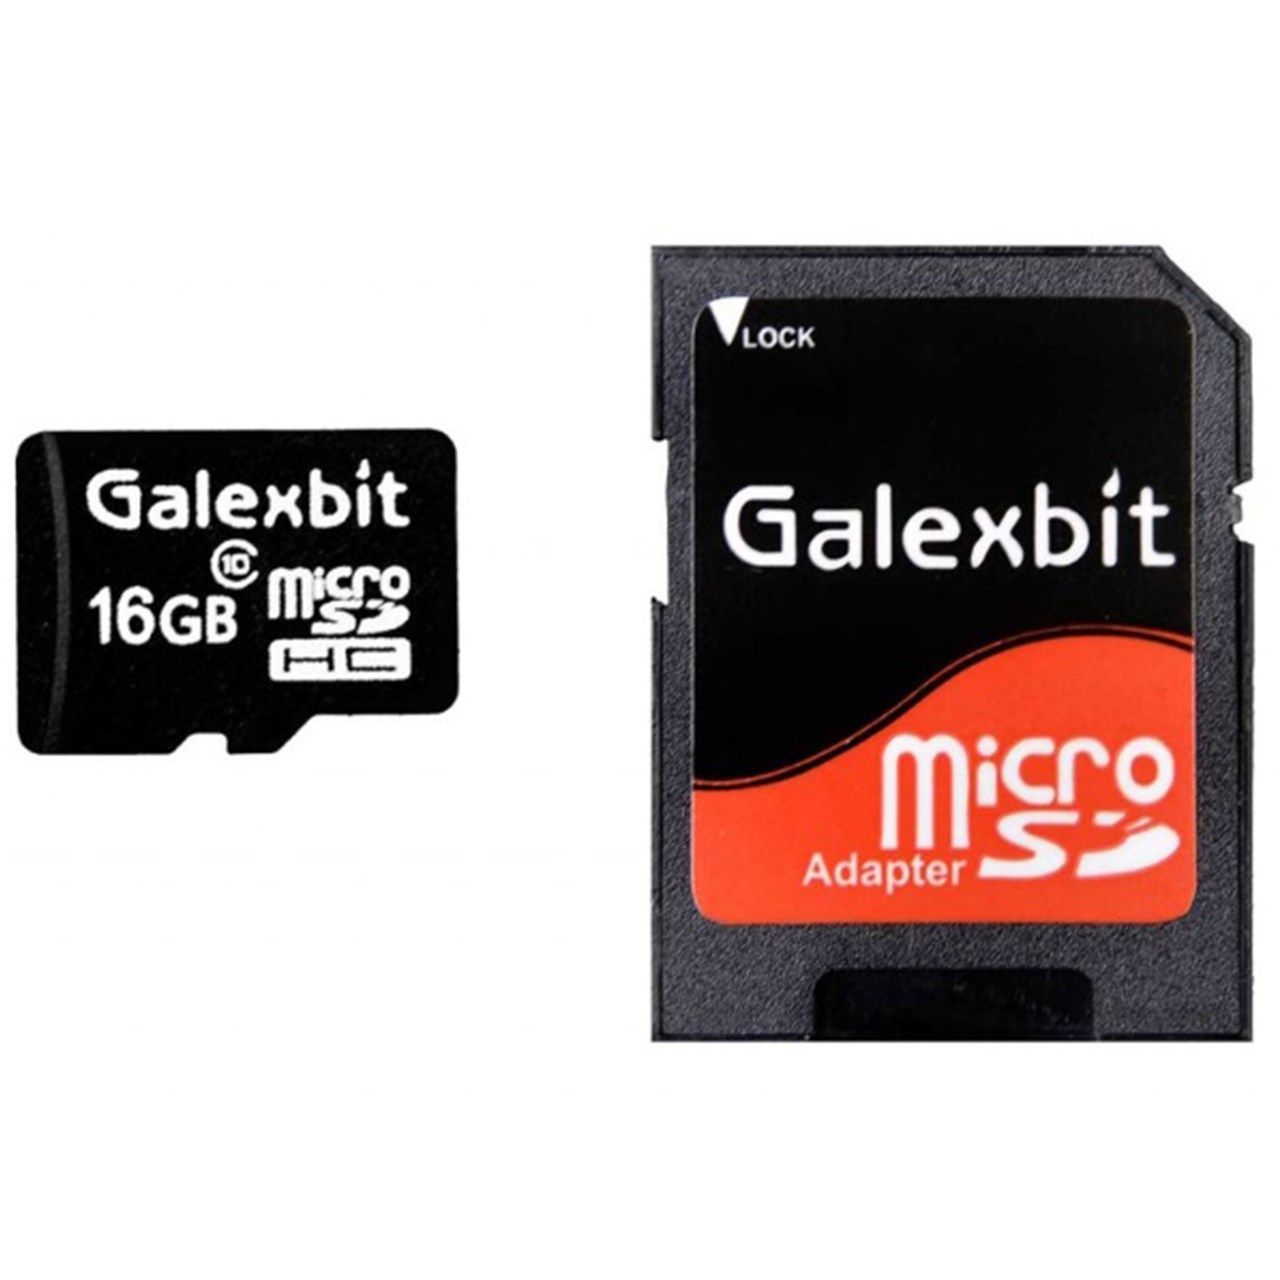 کارت حافظه microSD گلکسبیت کلاس 10 استاندارد U1 شتاب 45MBps همراه با آداپتور SD گنجایش 16 گیگابایت